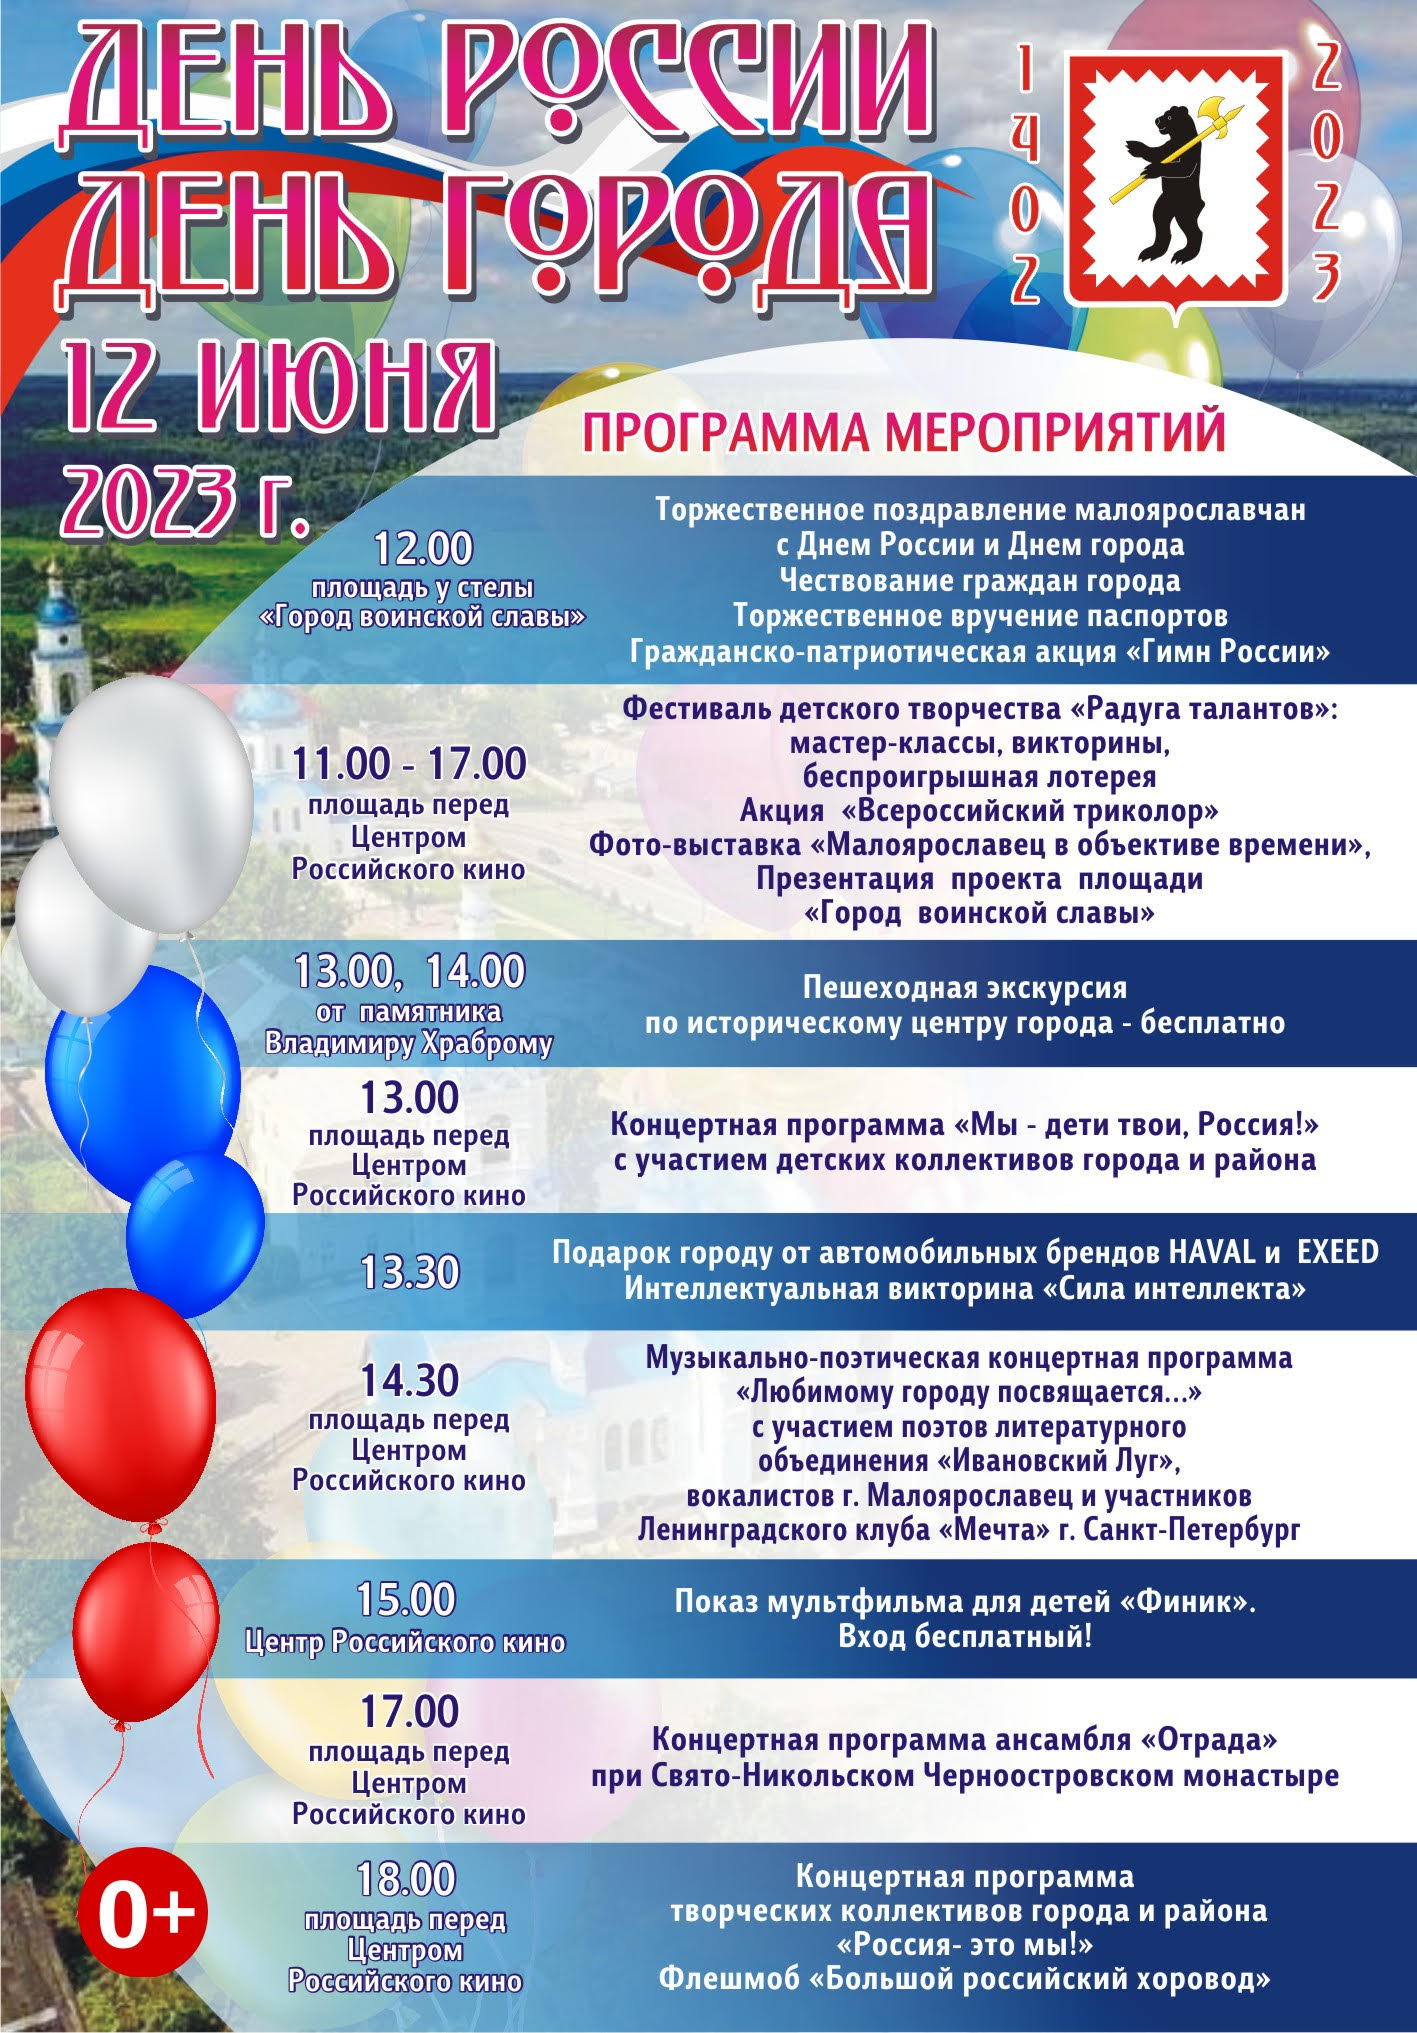 Приглашаем жителей и гостей города на мероприятия, посвящённые празднованию Дня России и 621-й годовщины со дня основания города Малоярославца.